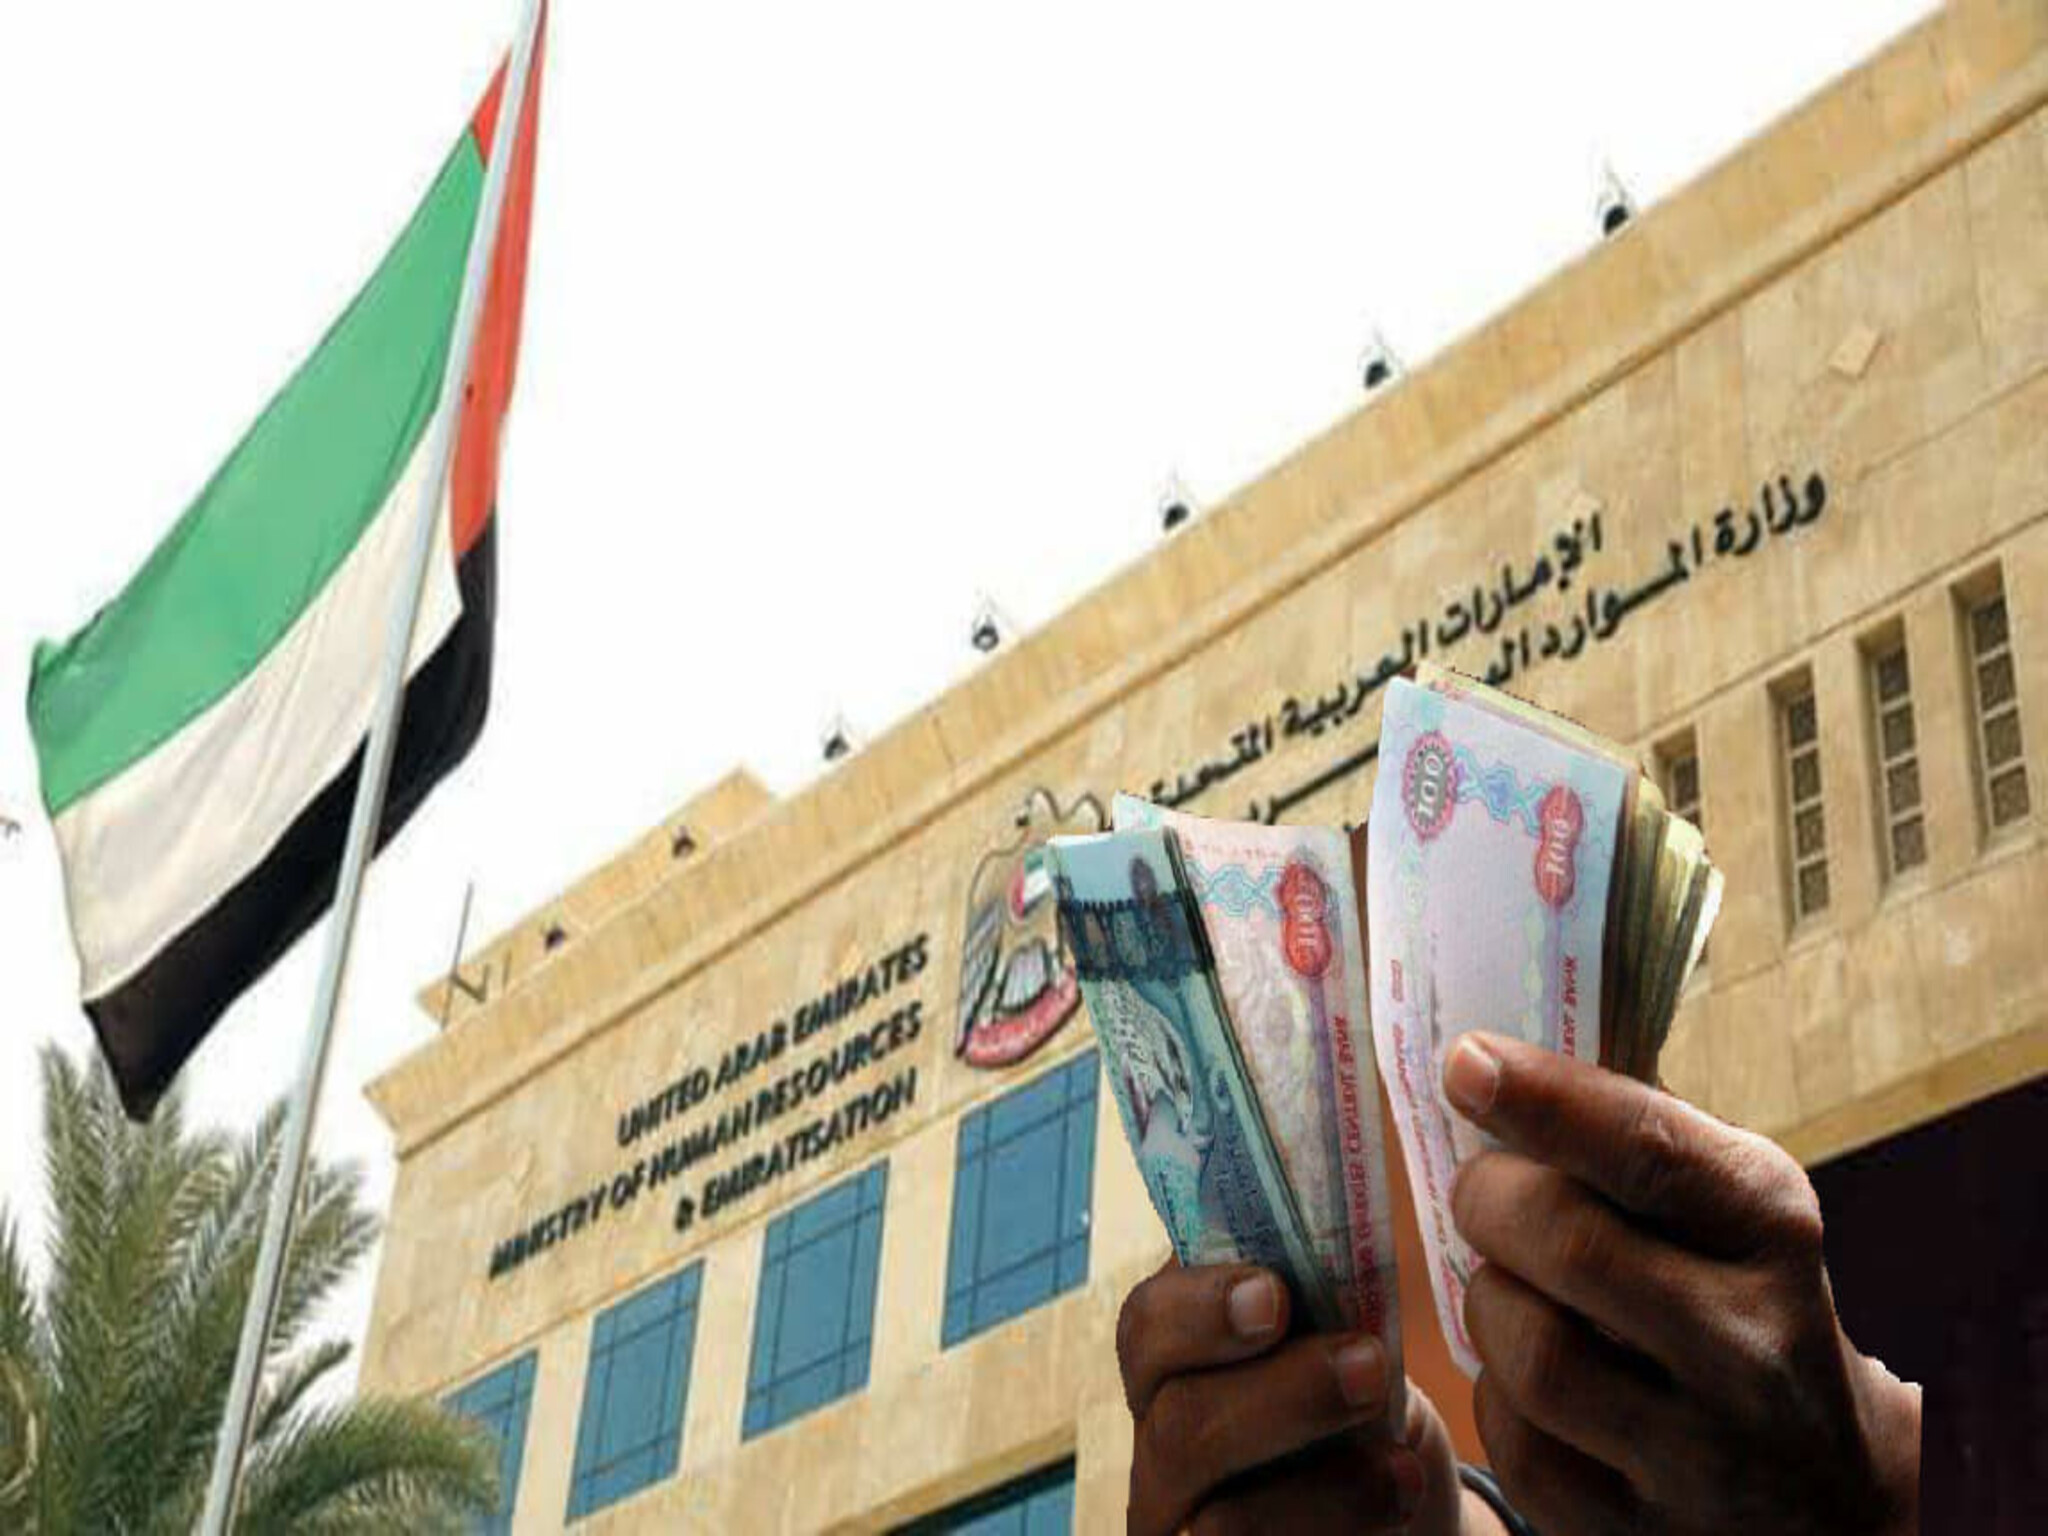 غرامات تصل إلى ١٠٠ ألف درهم على ١٣٠٠ شركة في الإمارات بسبب مخالفات التوطين